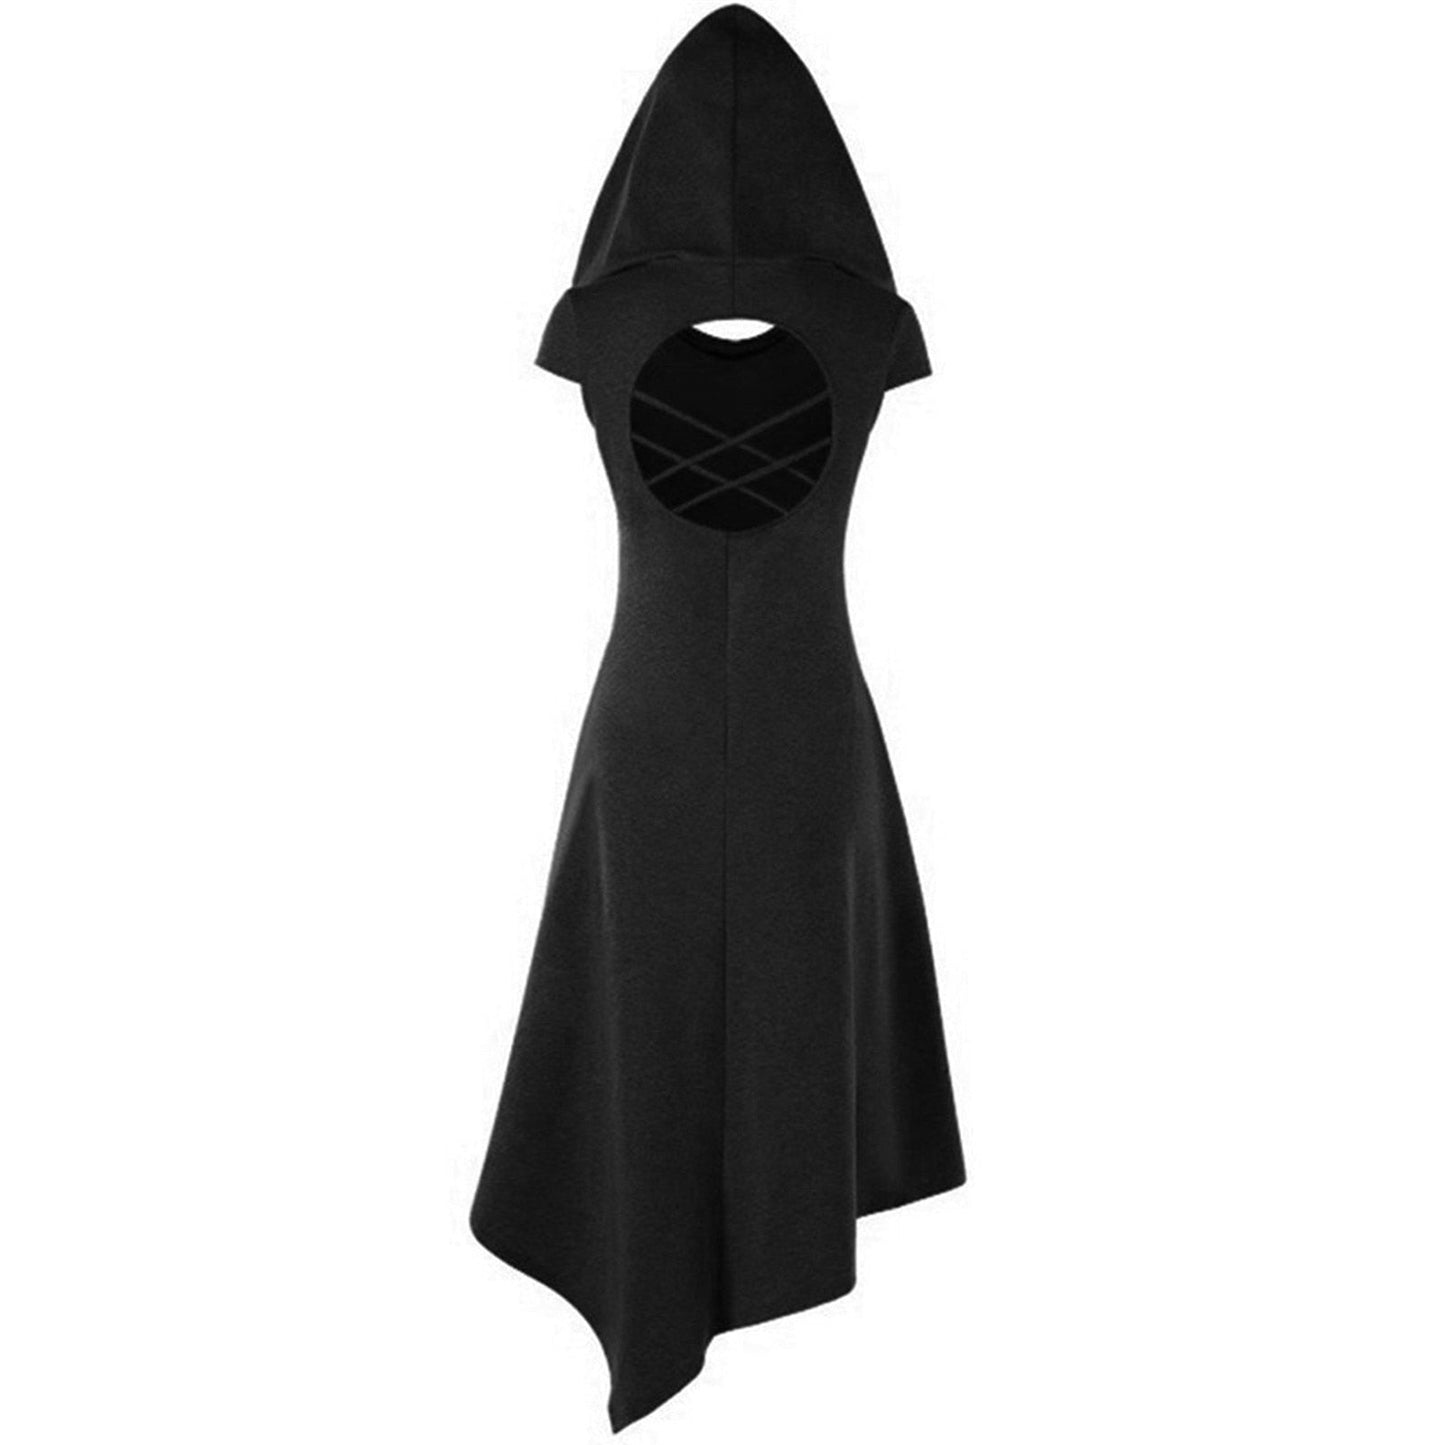 Women Medieval Hooded Cloak